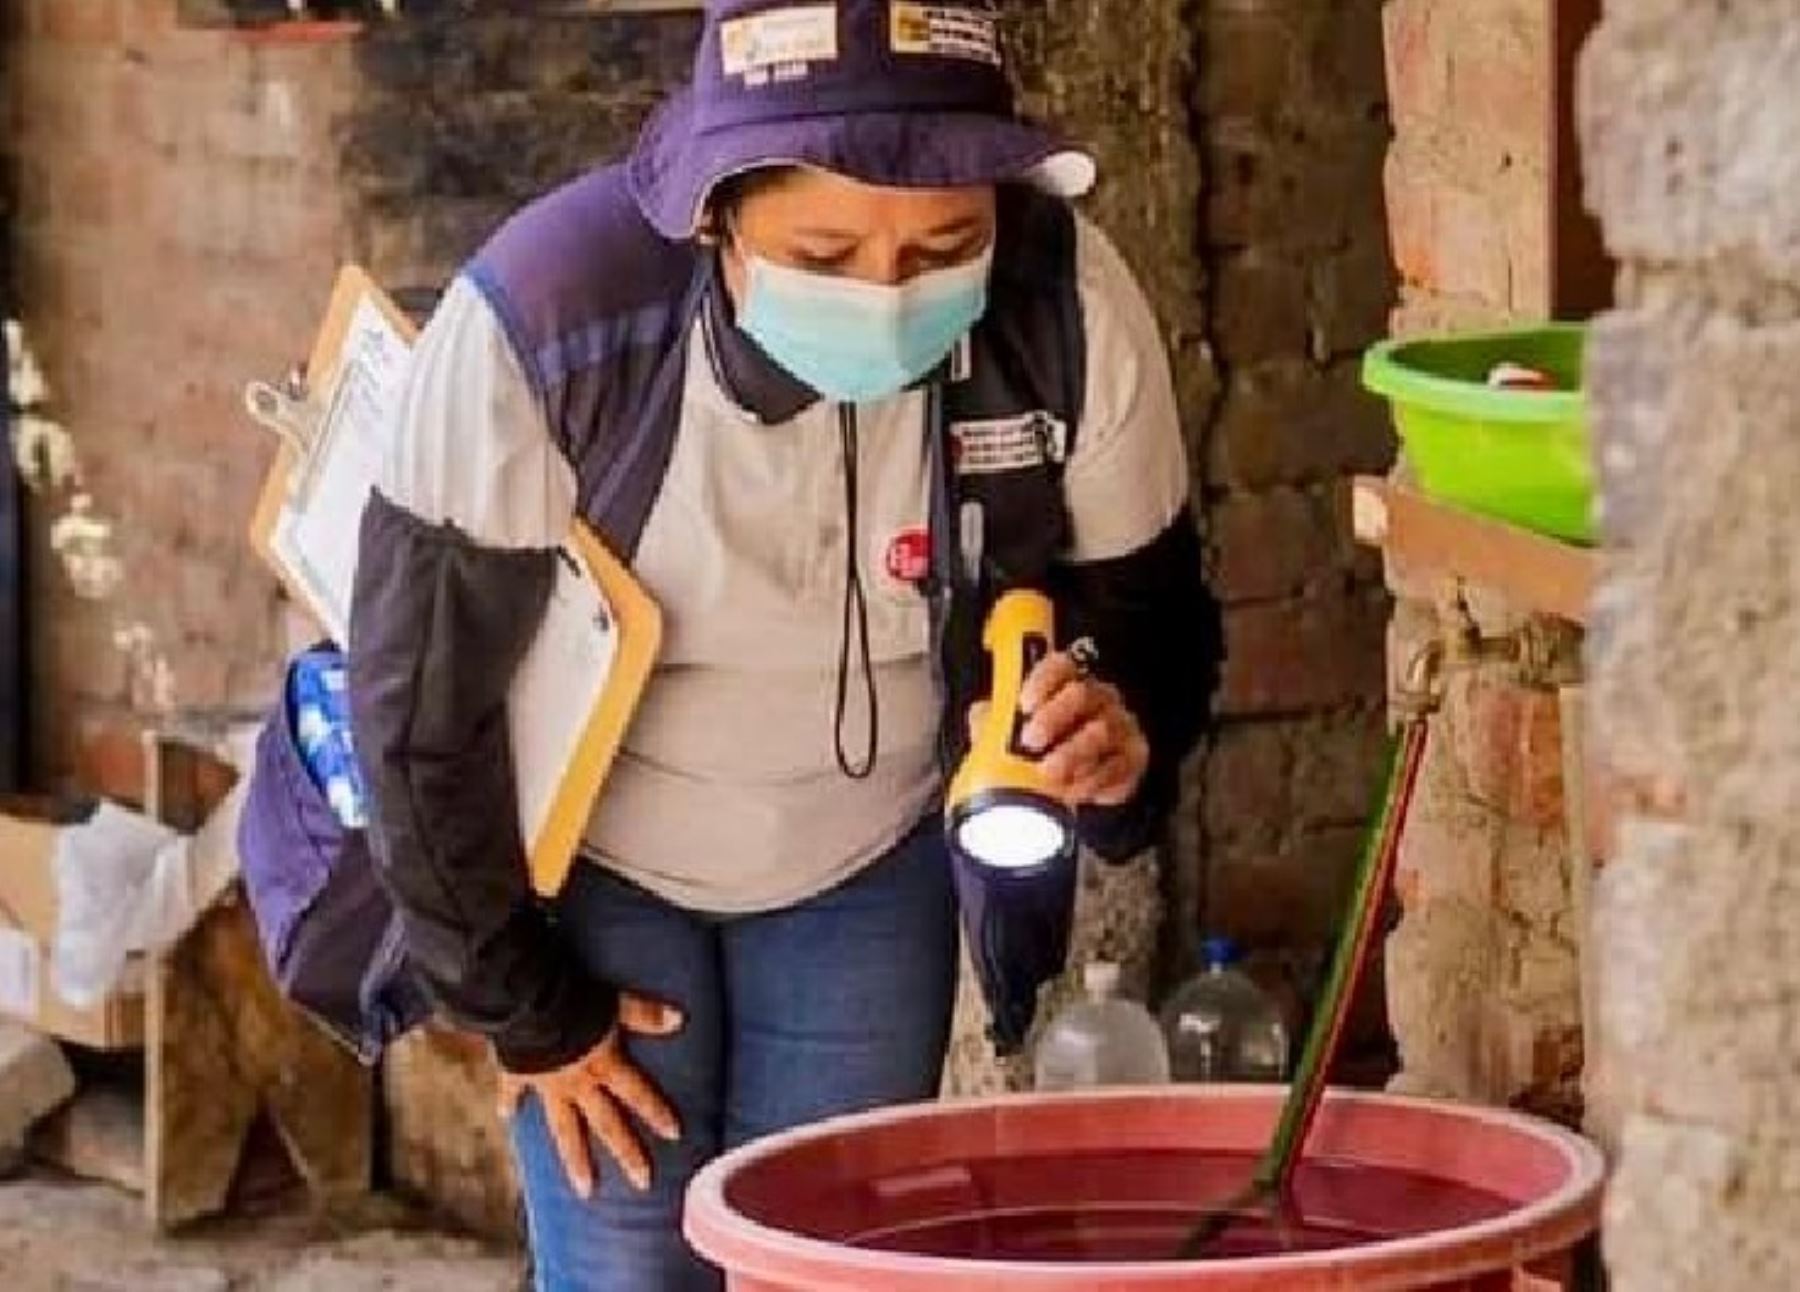 Inspectores de salud de Piura iniciaron una campaña en el distrito de Chulucanas para erradicar los criaderos del zancudo transmisor del dengue y otras enfermedades.